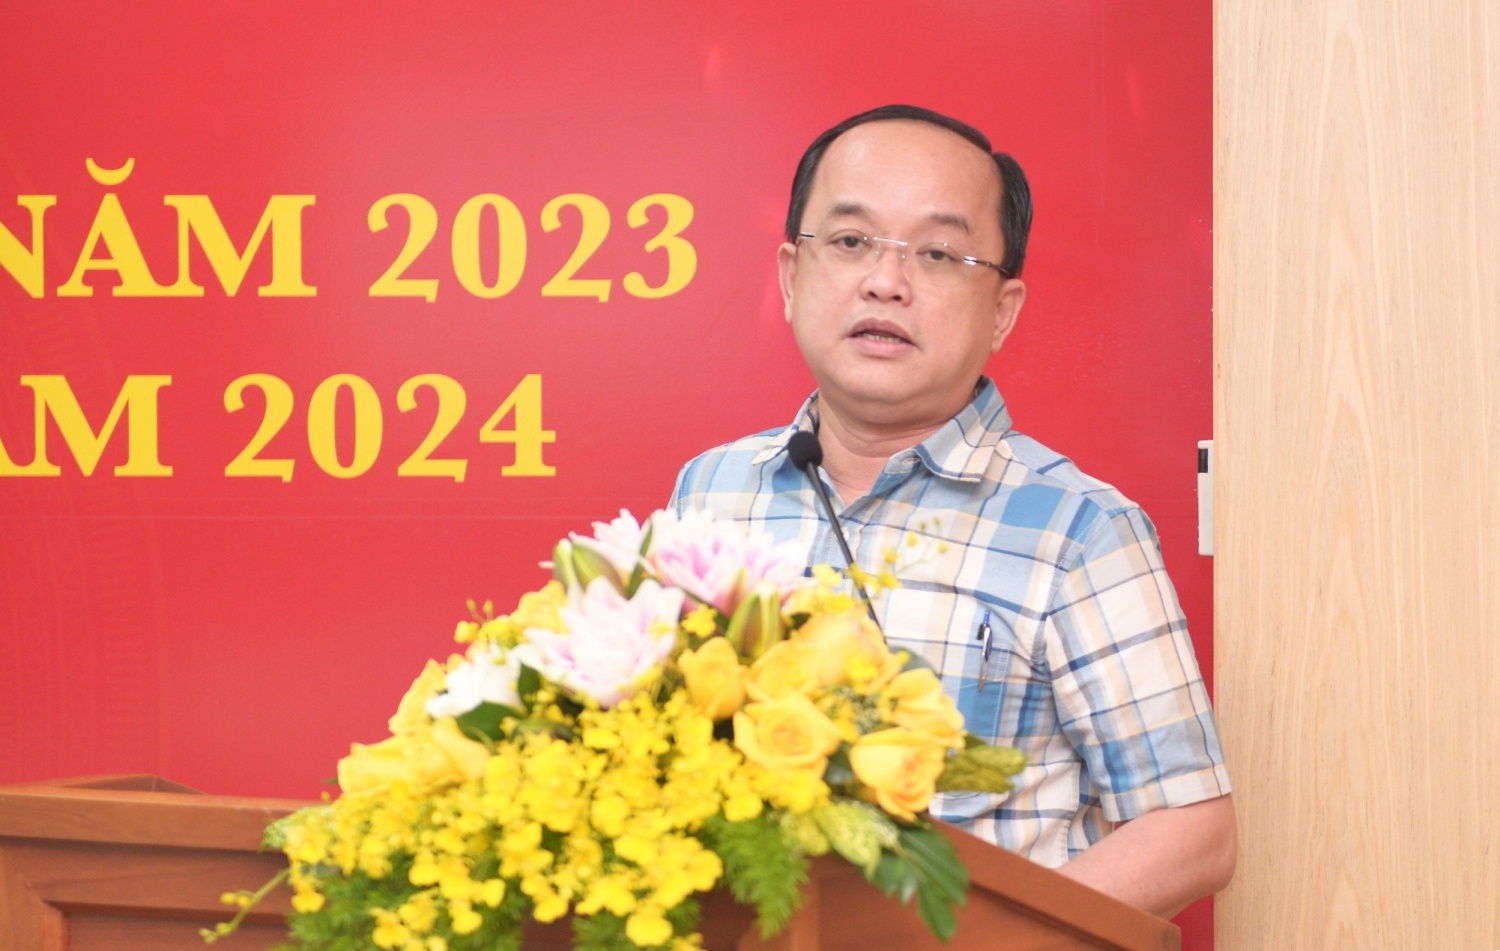 Đồng chí Đinh Quang Nhựt, Phó Tổng giám đốc PV Drilling trình bày tham luận tại hội nghị tổng kết.